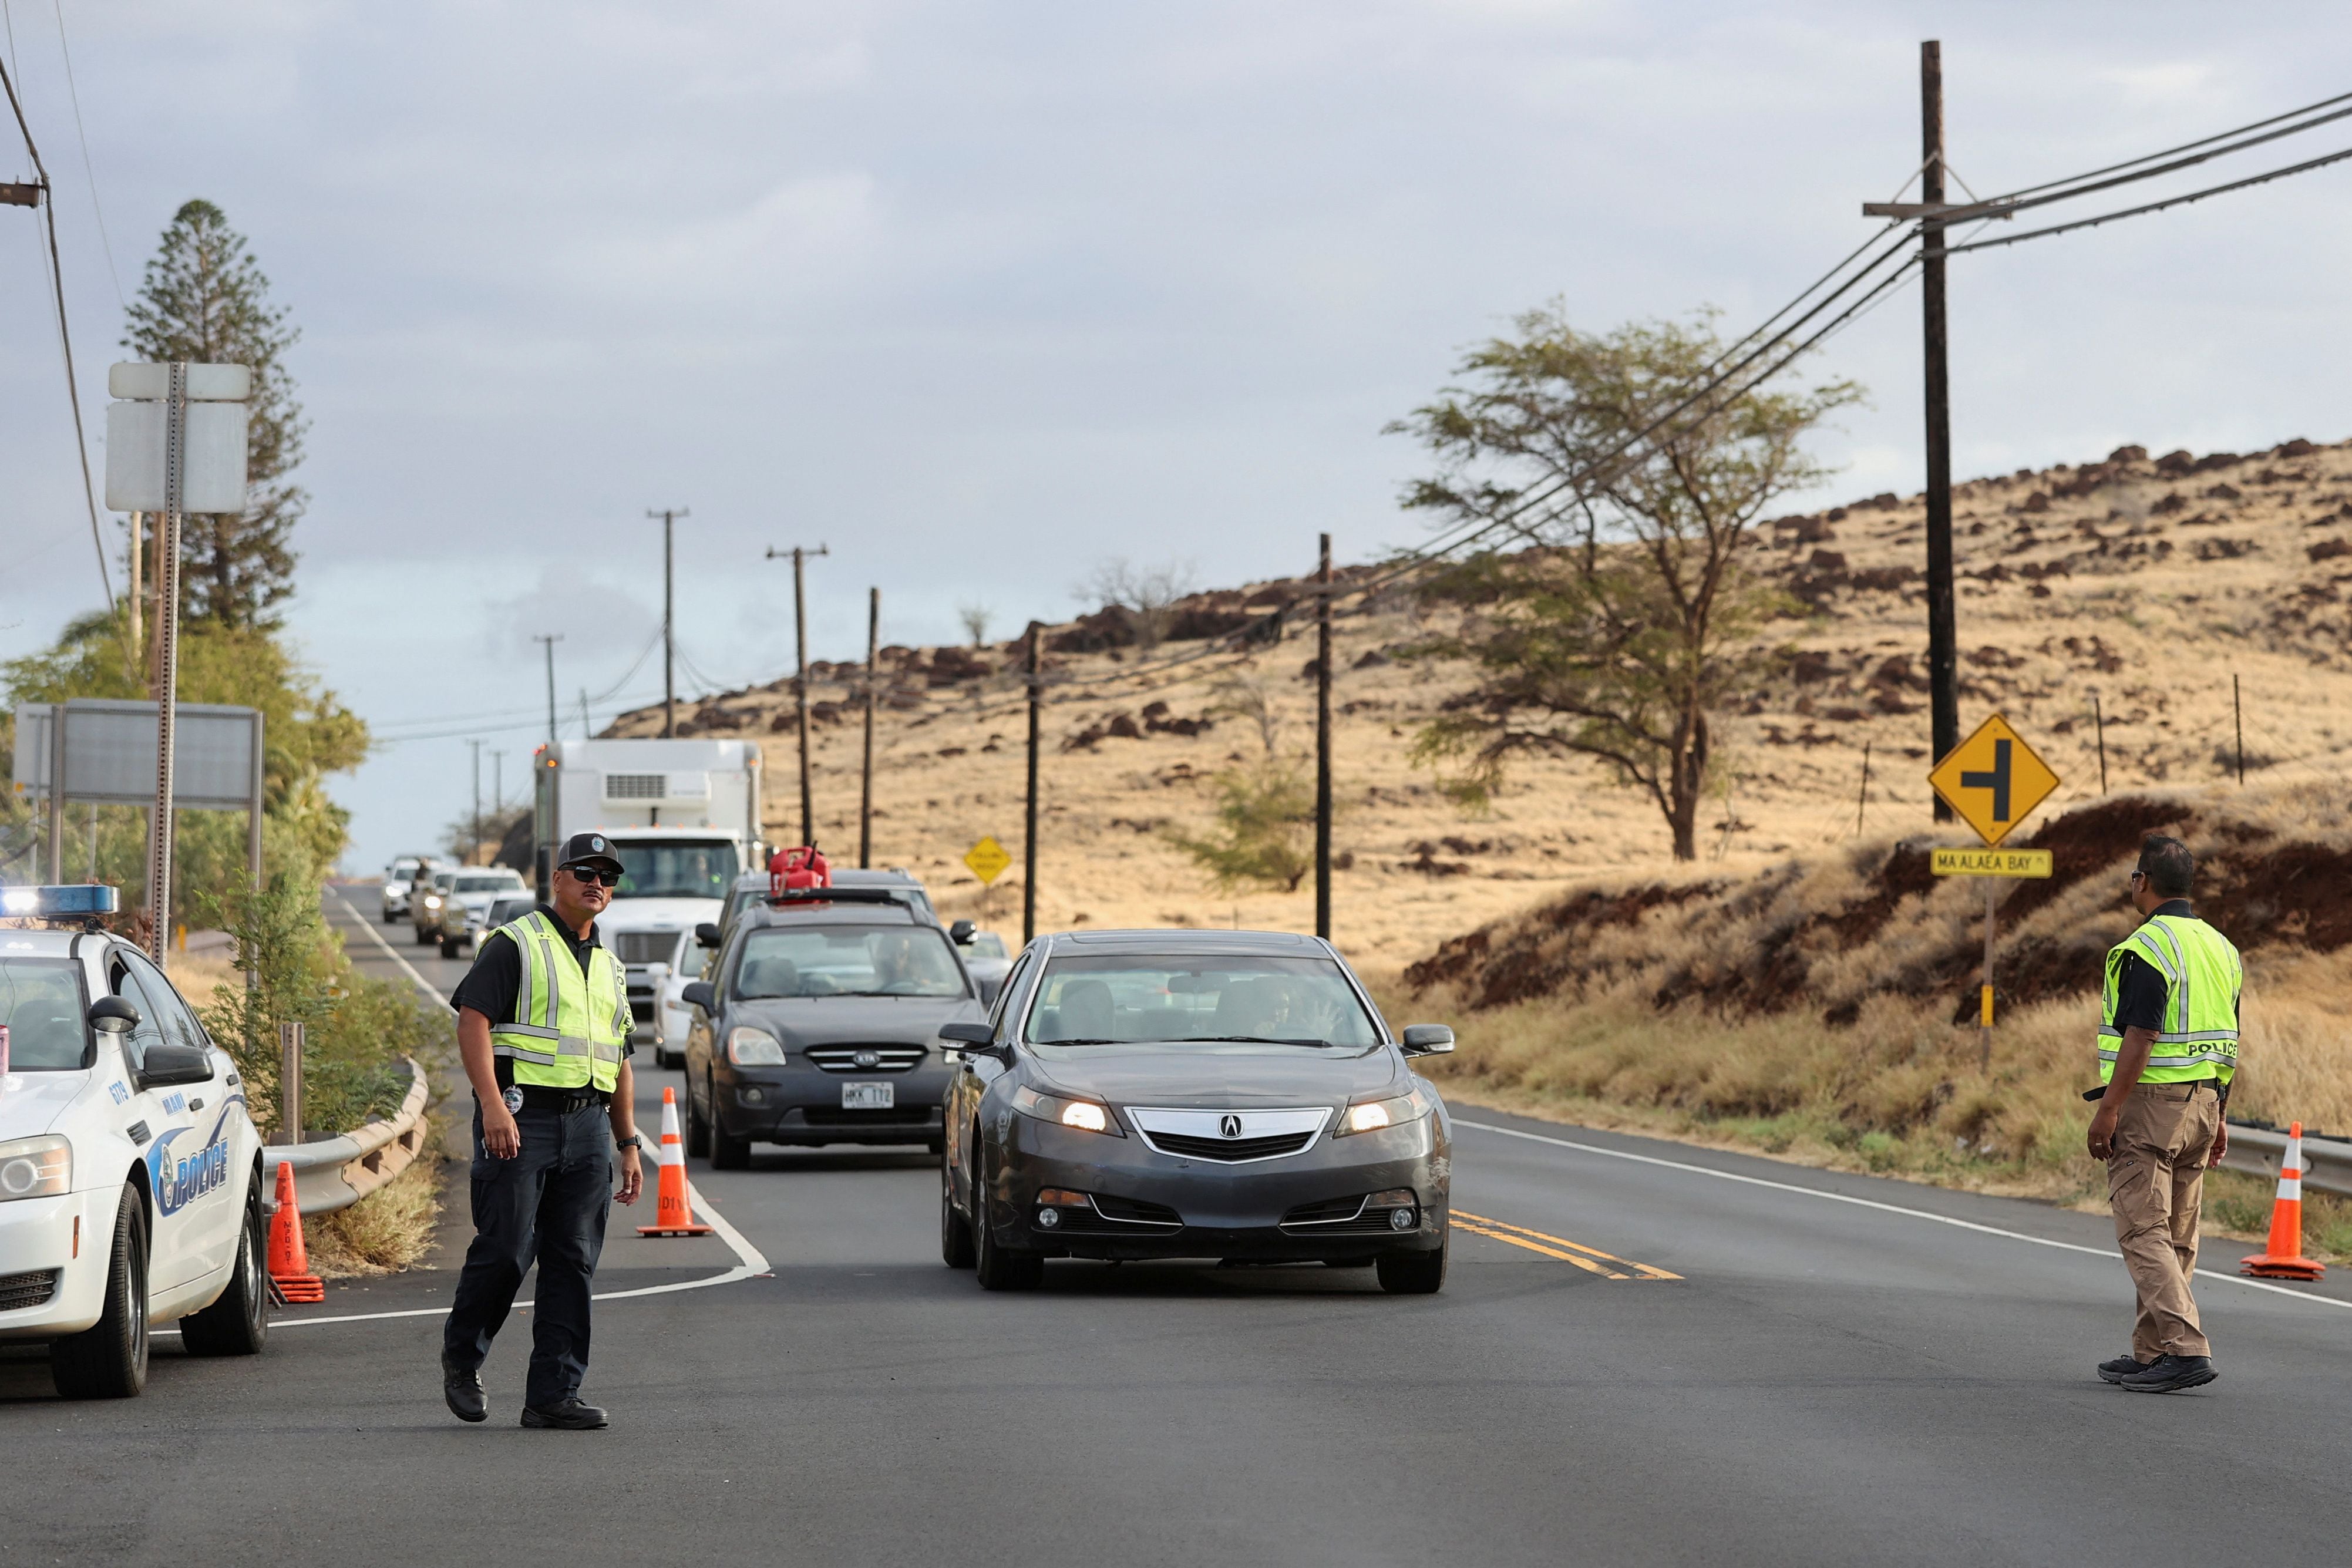 La policía dirige los coches procedentes del oeste de Maui, donde los incendios forestales destruyeron gran parte de la histórica ciudad de Lahaina, en un control de carretera en Kahului, Maui, Hawai, EE.UU. 10 de agosto 2023. REUTERS/Marco García